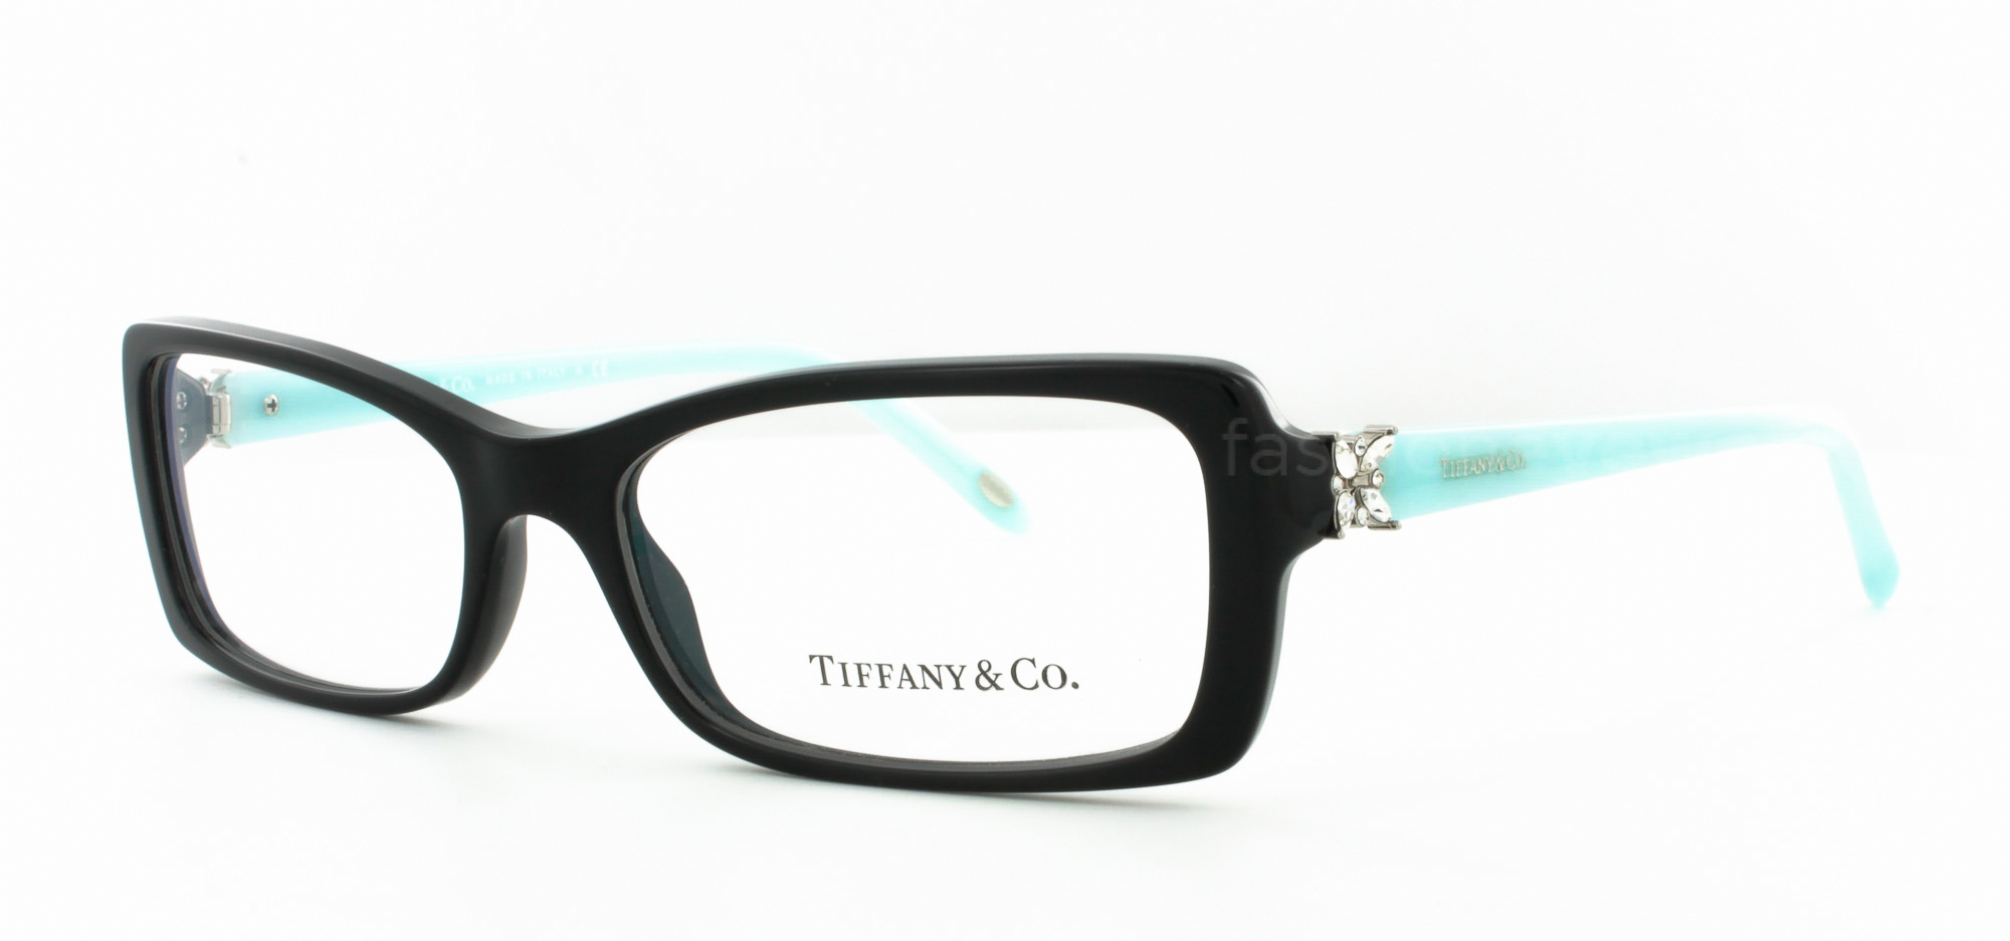 tiffany eyeglass frames 2091